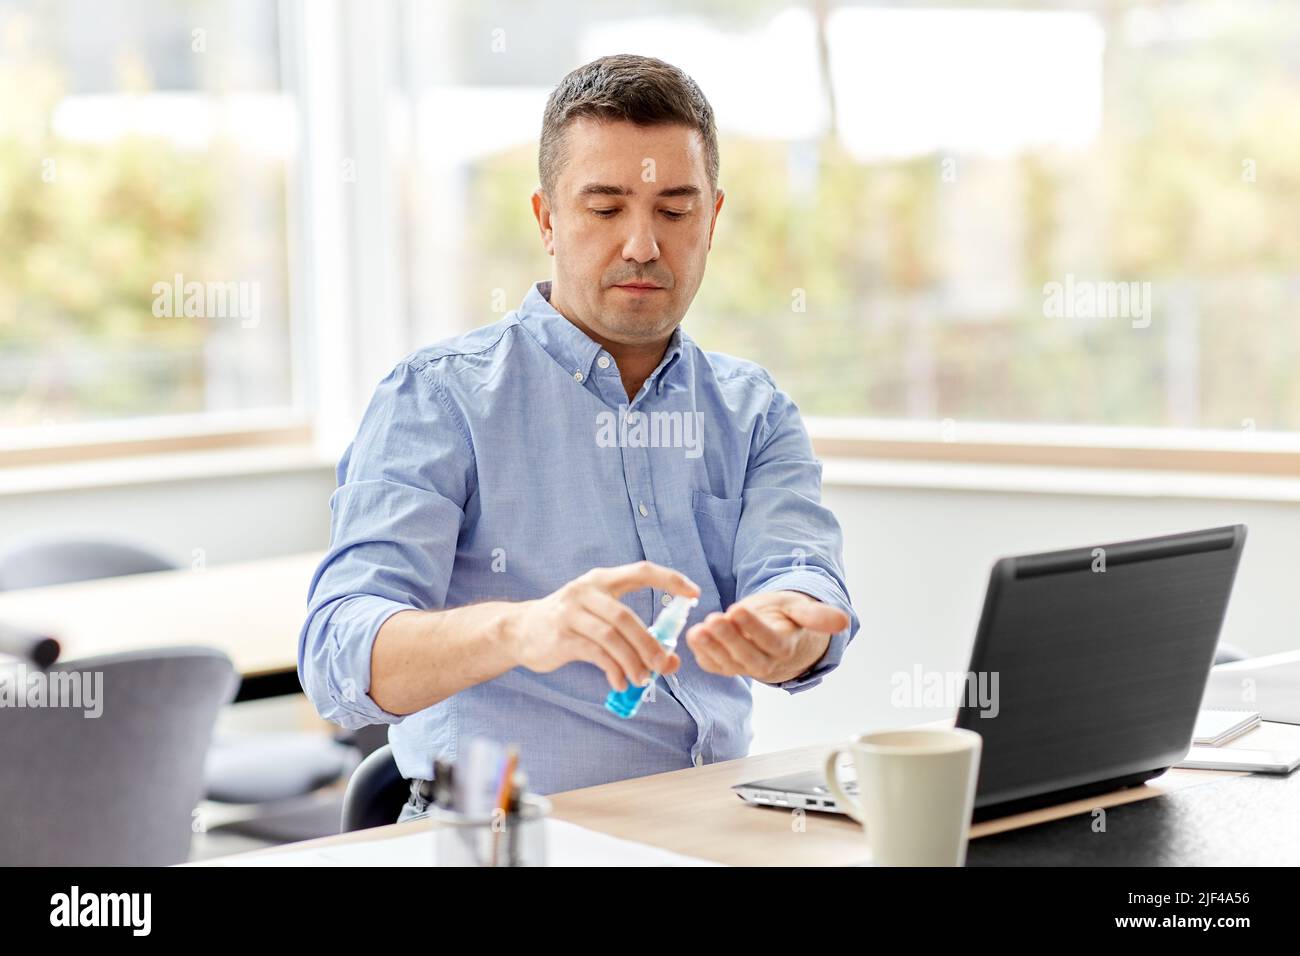 homme utilisant un désinfectant pour les mains au bureau à domicile Banque D'Images